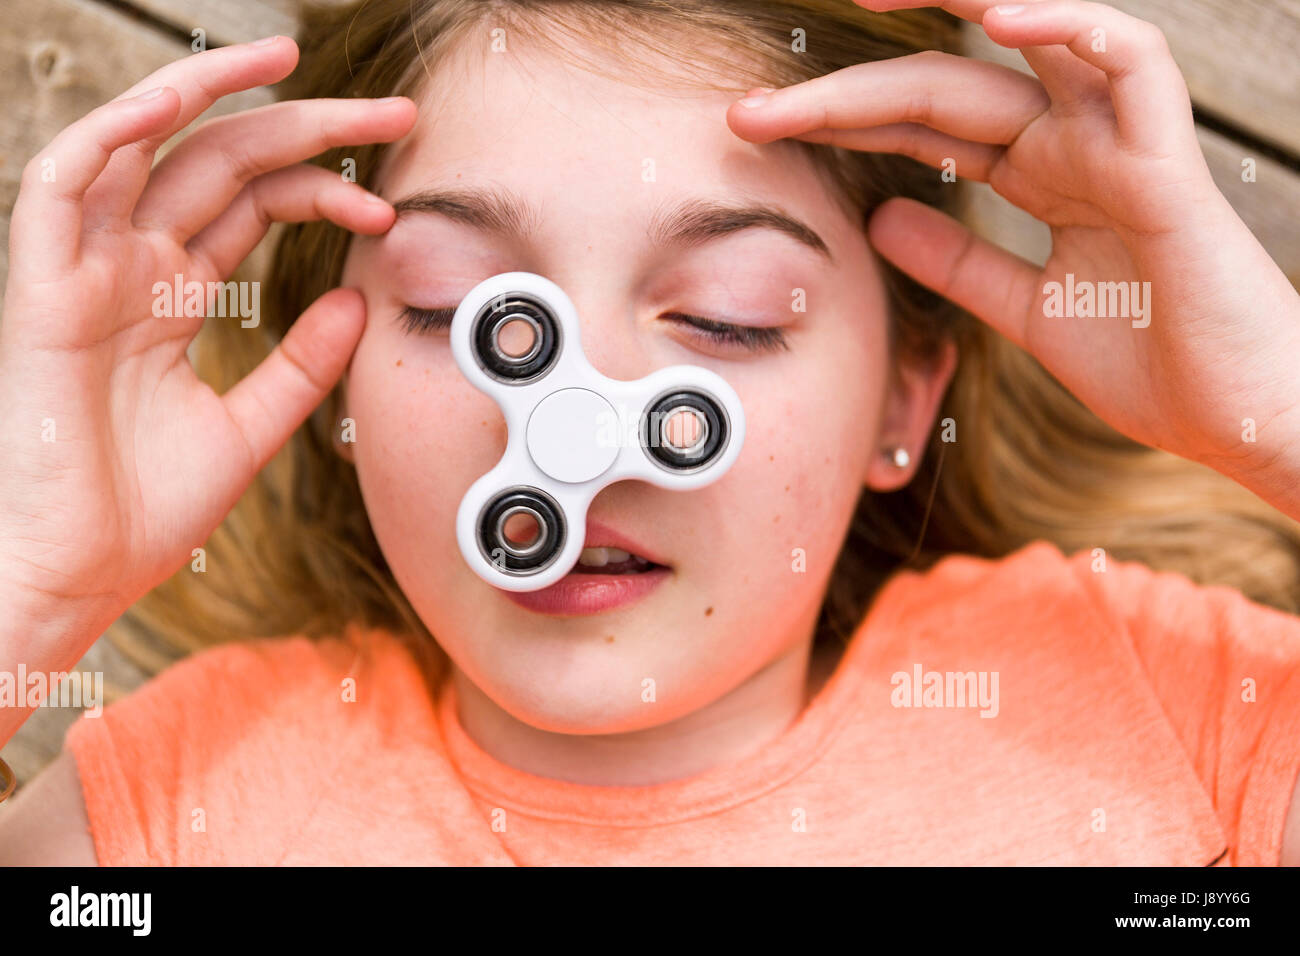 Weibliche Teenager spielen mit zappeln Spinner Spinnerei Spielzeug auf ihre Nase Model Release: Ja. Property Release: Nein. Stockfoto